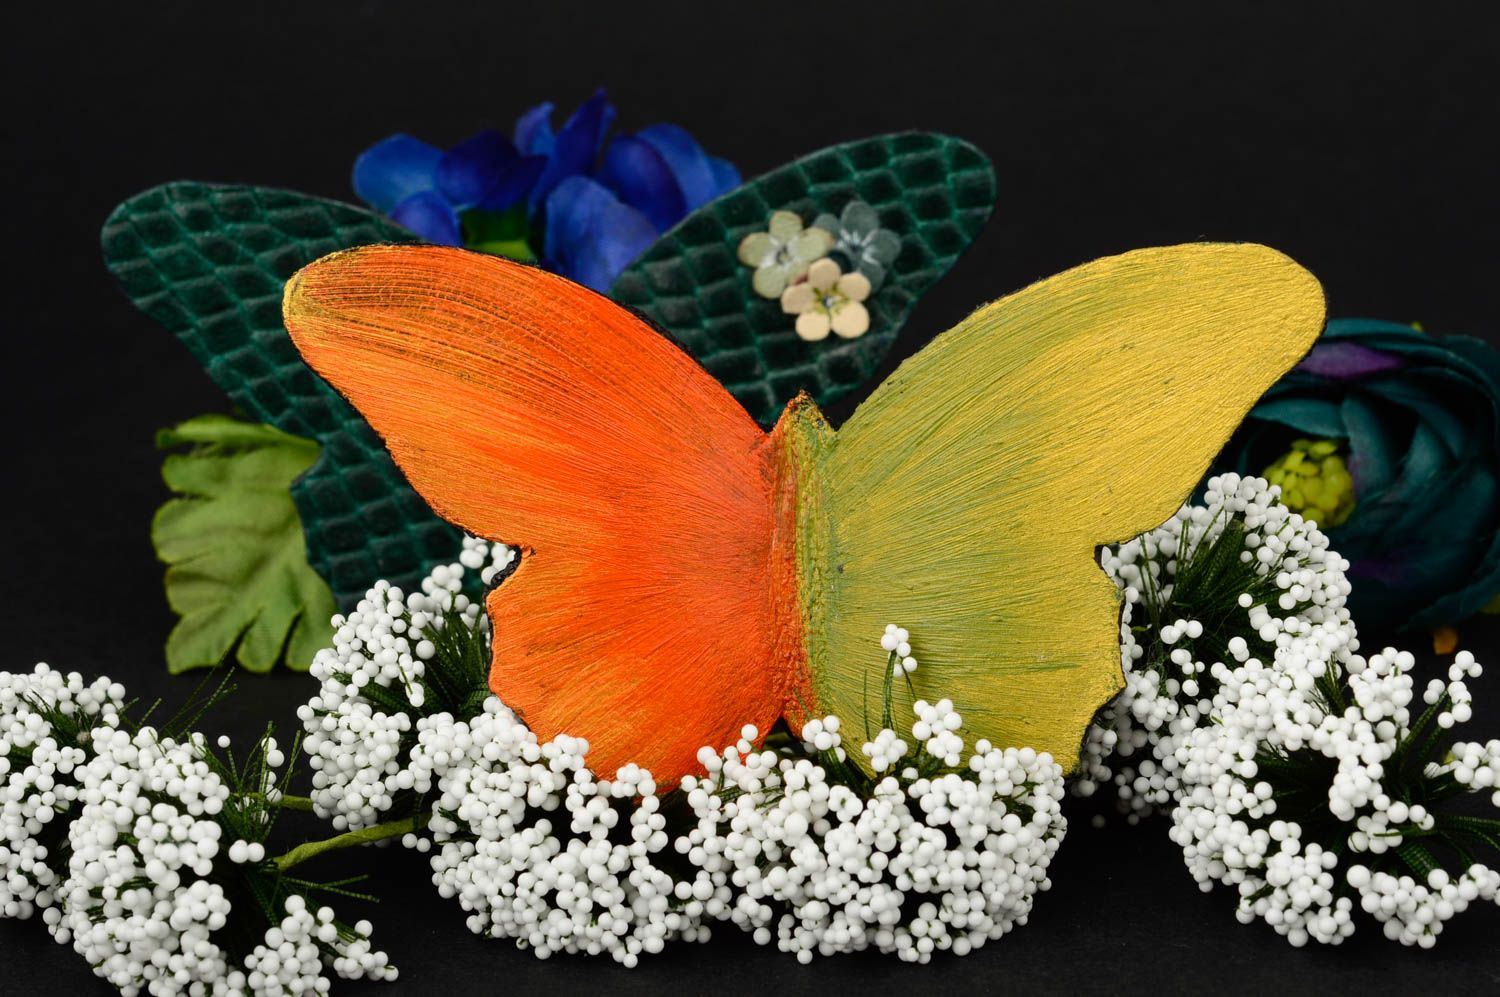 Брошь ручной работы тропическая бабочка авторская бижутерия красивая брошь  фото 1